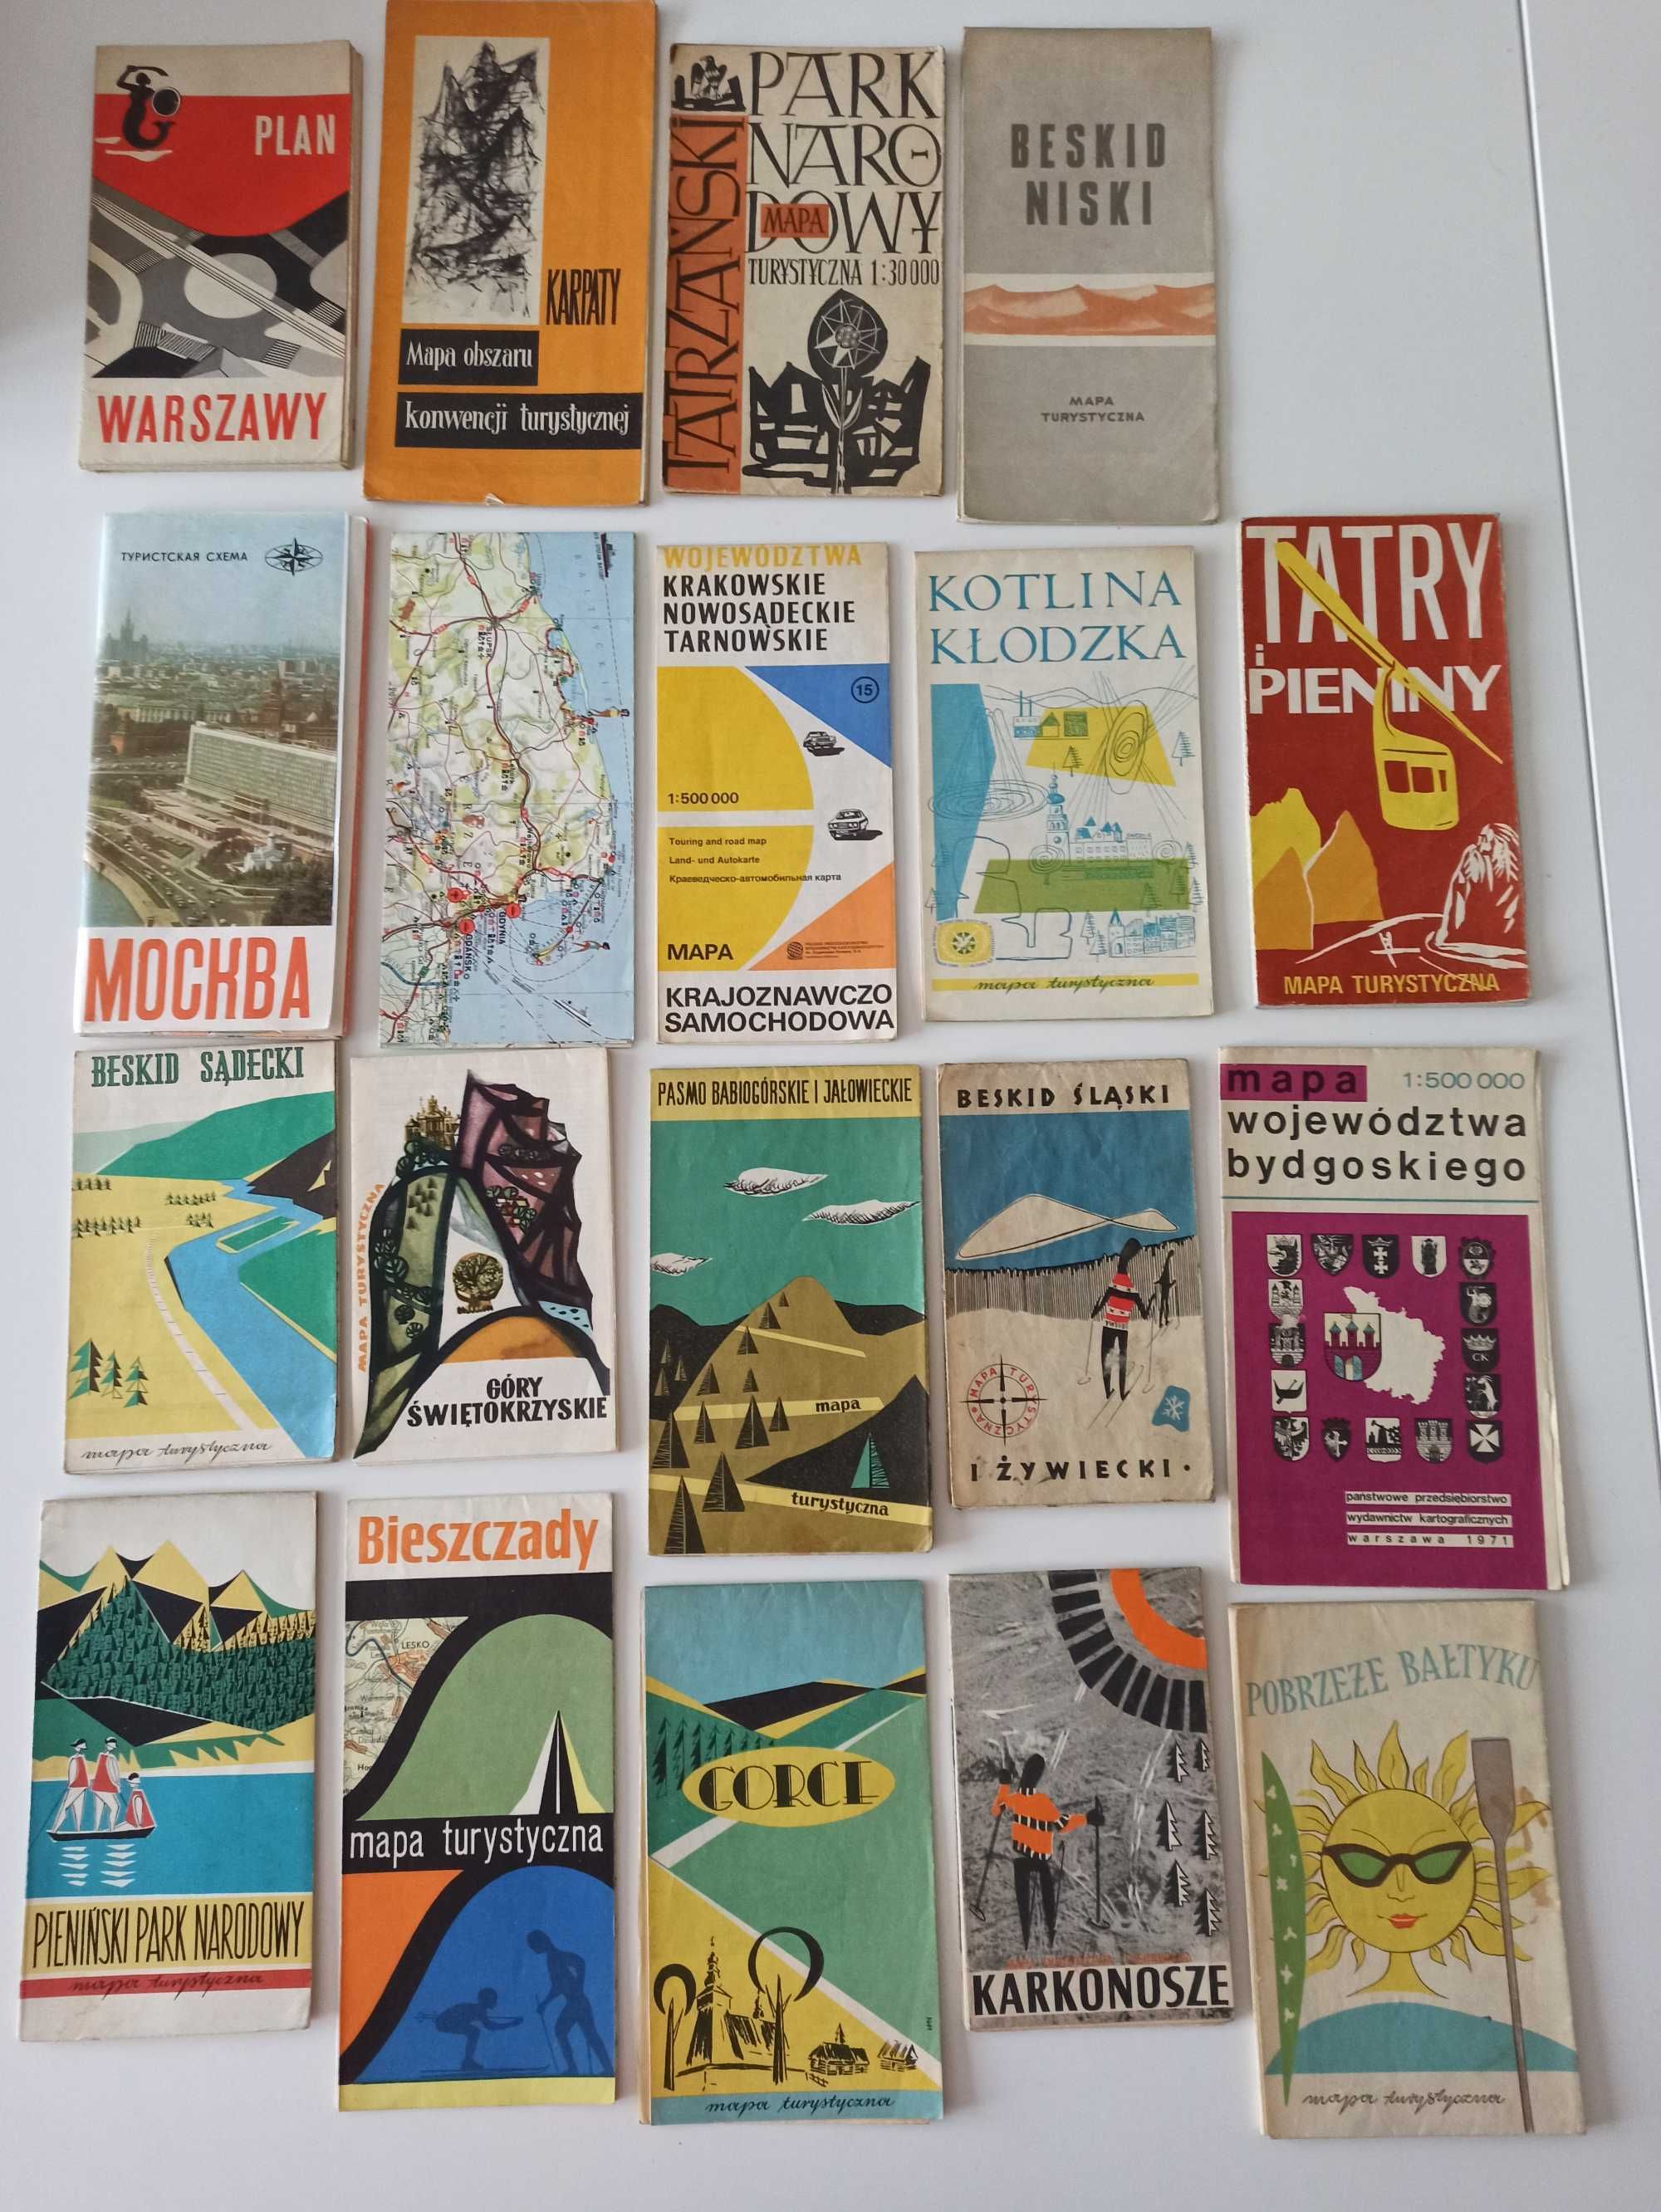 Pasmo babiogórskie i jałowieckie Mapa turystyczna 1965